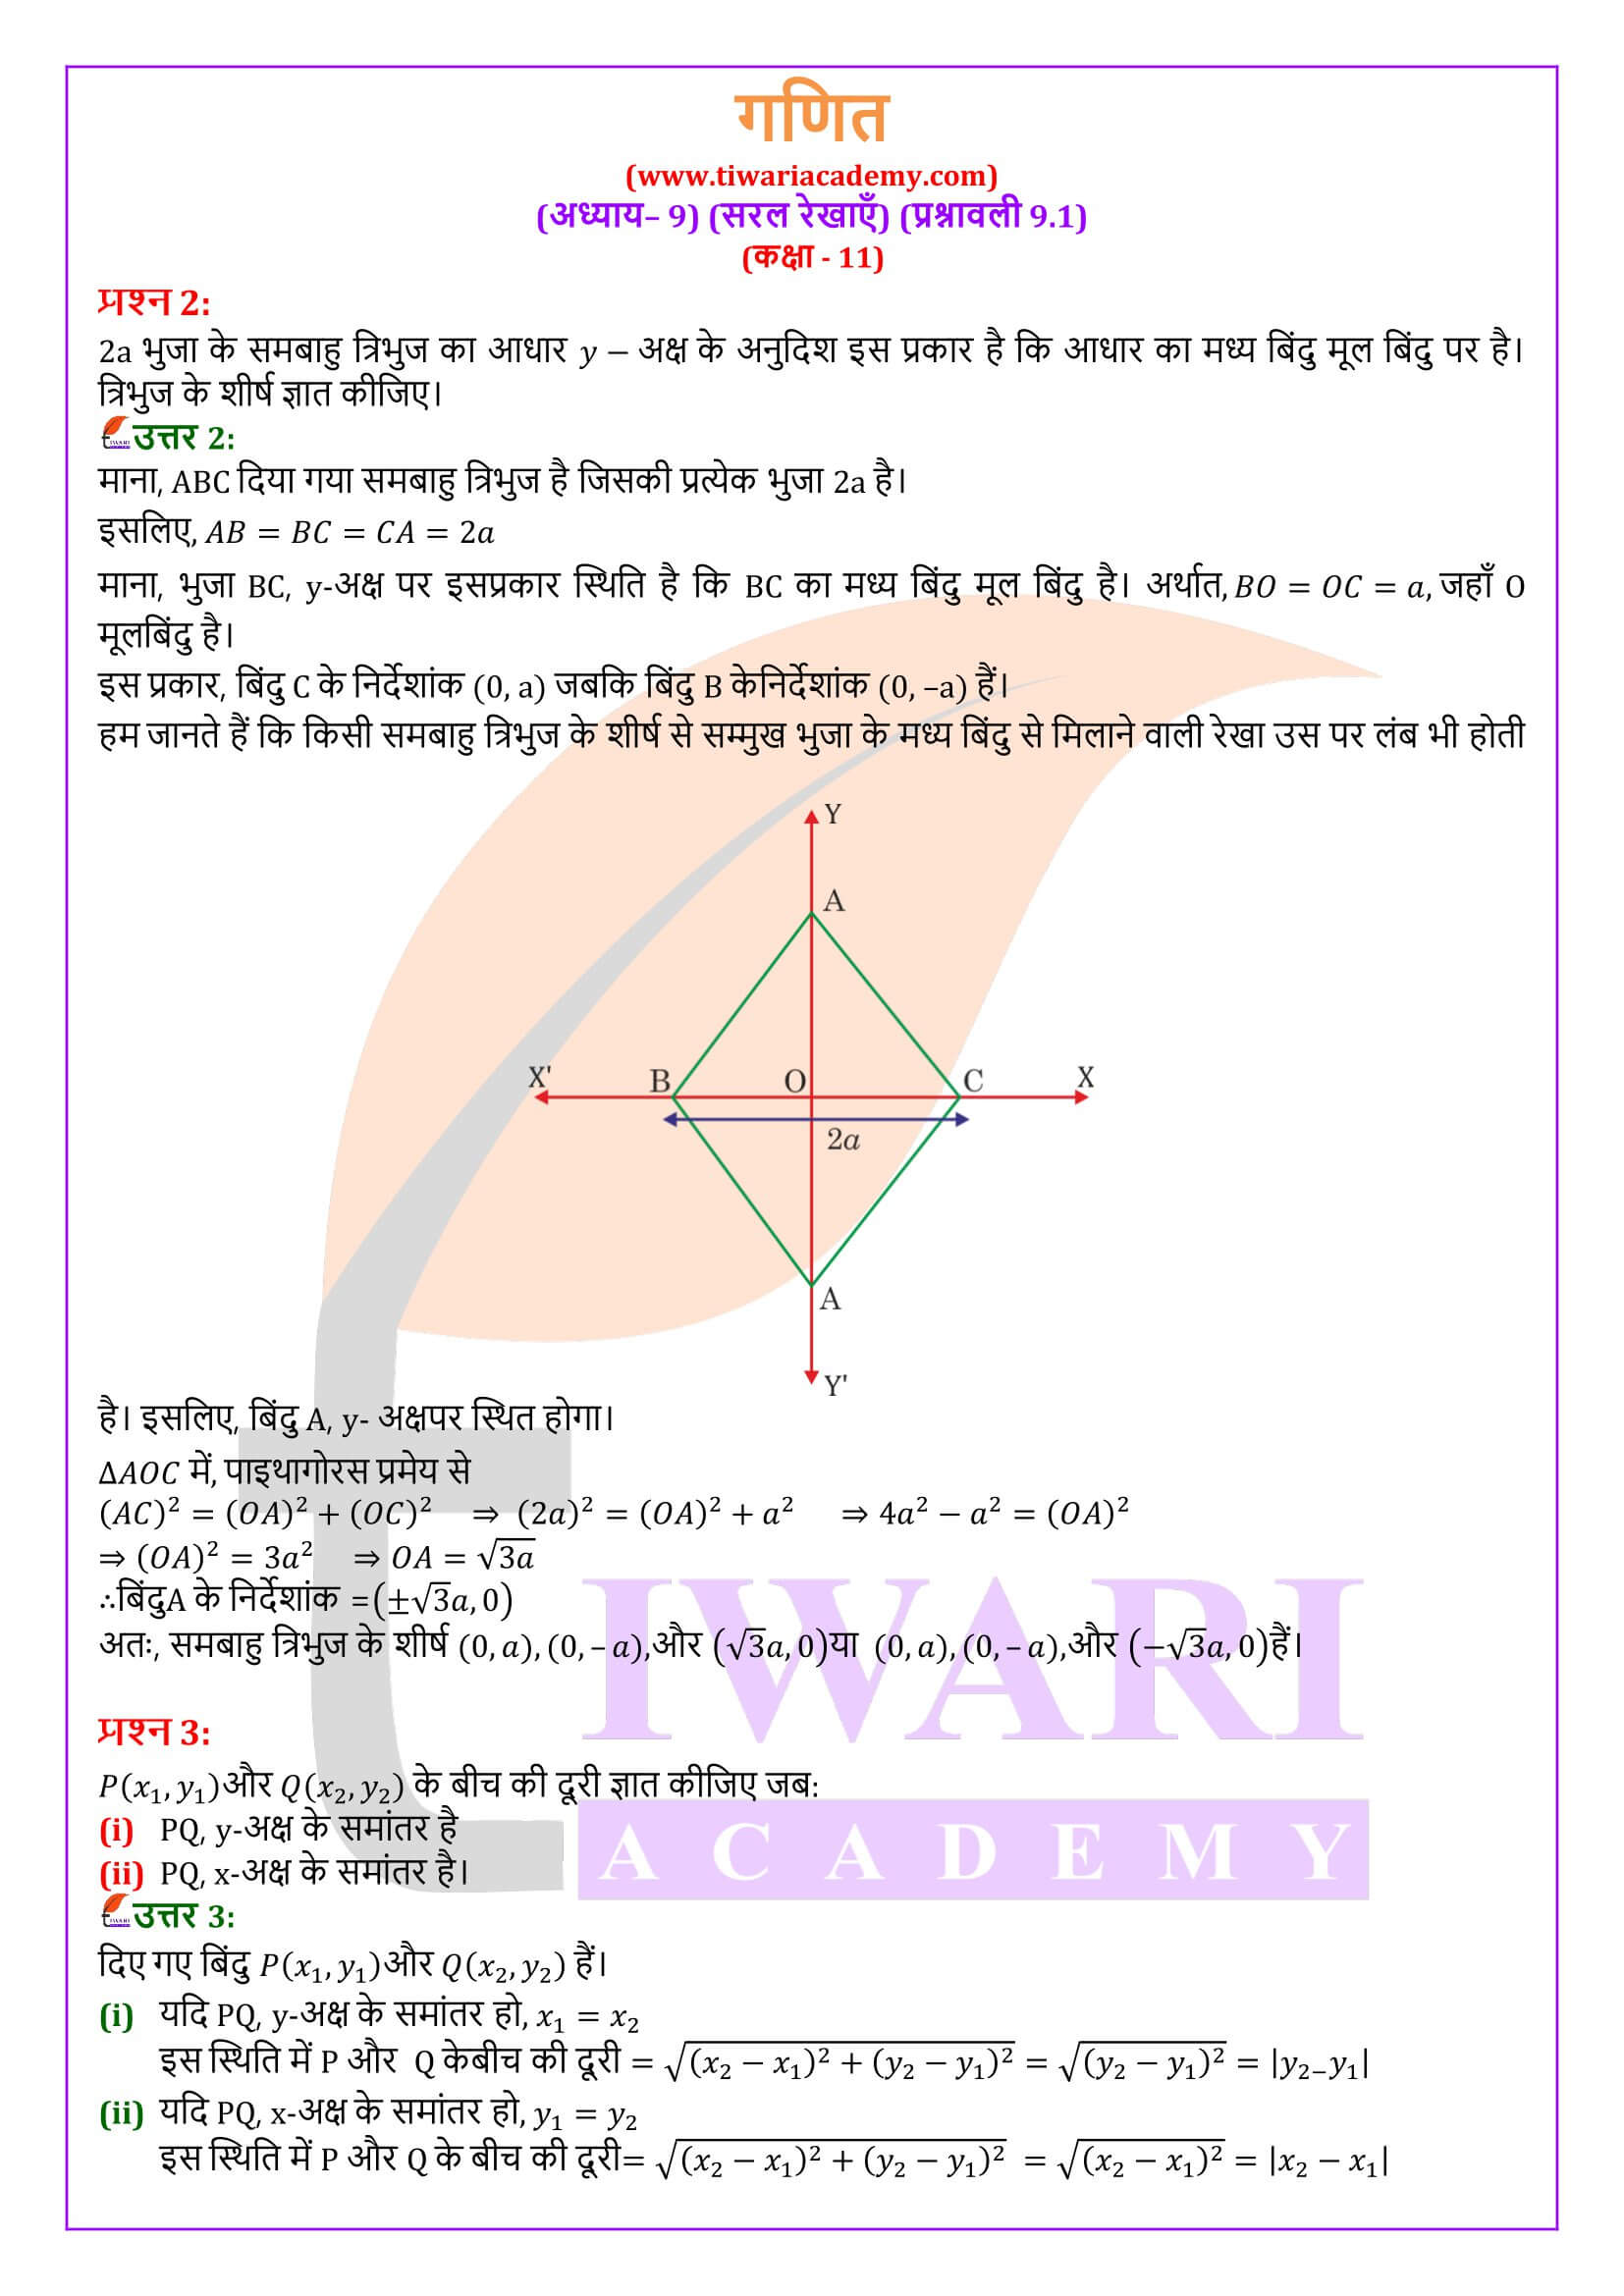 एनसीईआरटी समाधान कक्षा 11 गणित व्यायाम 9.1